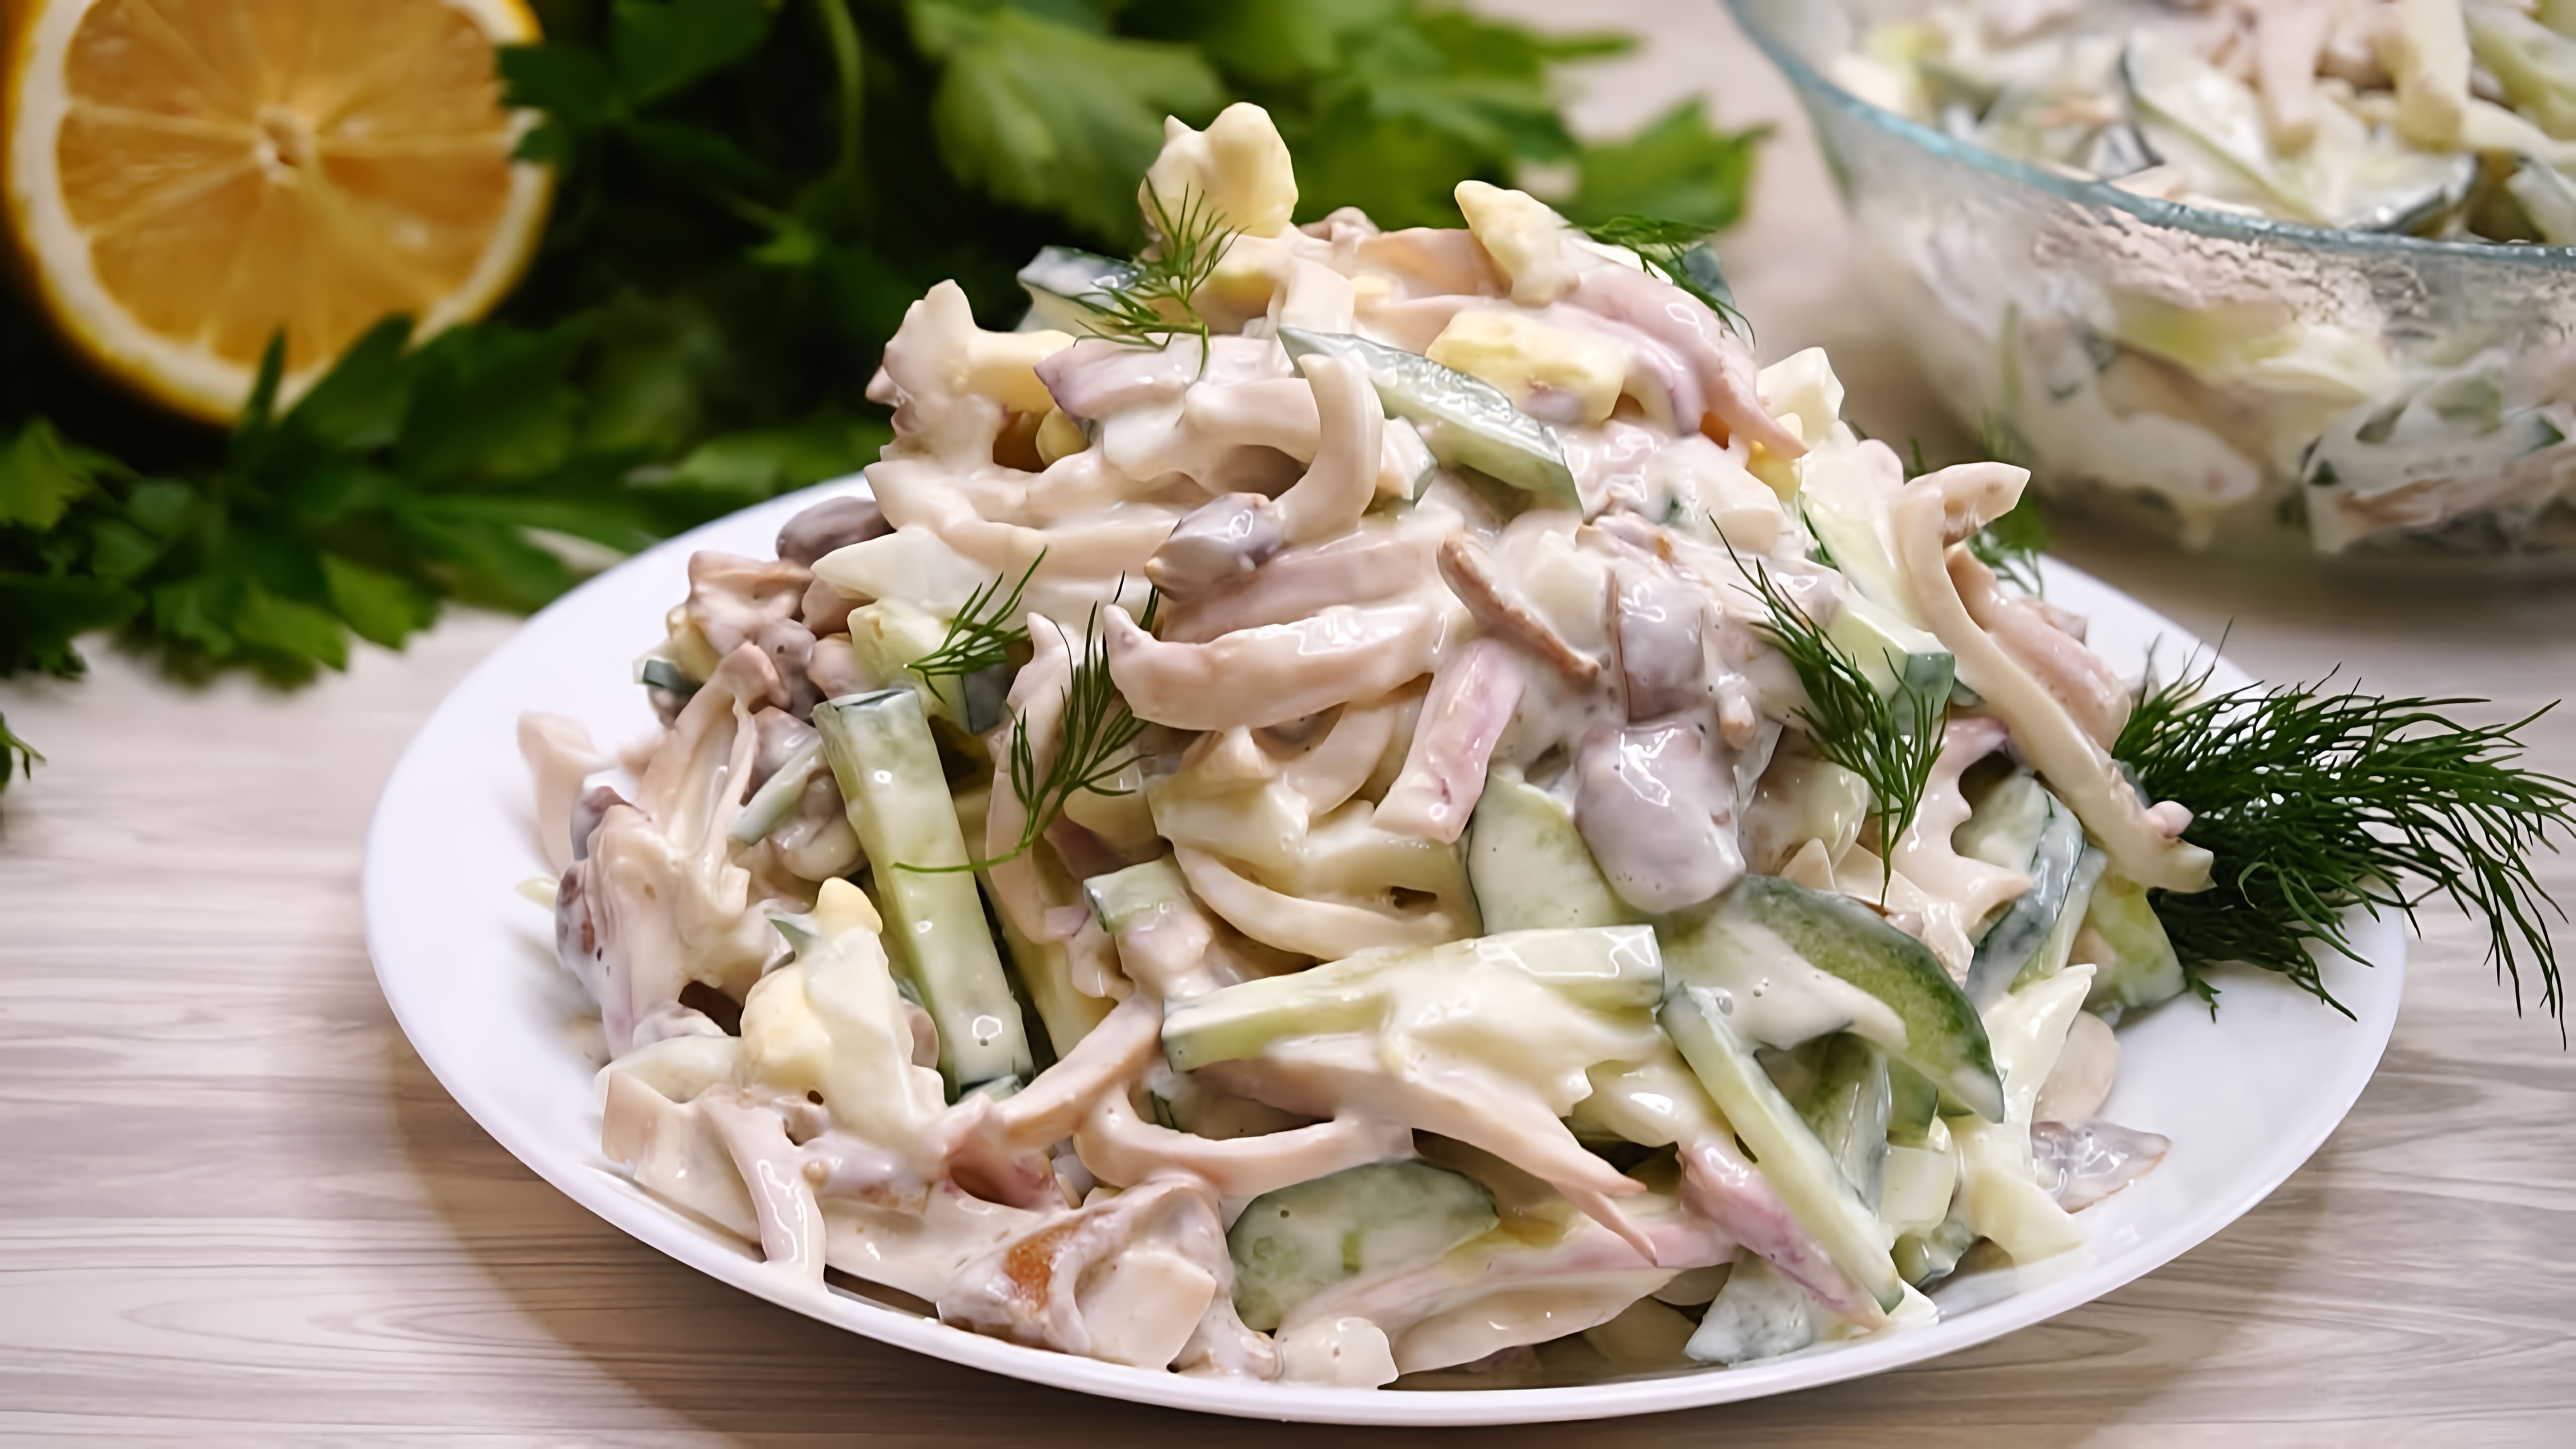 В этом видео демонстрируется рецепт приготовления вкусного салата с кальмарами и свежим огурцом